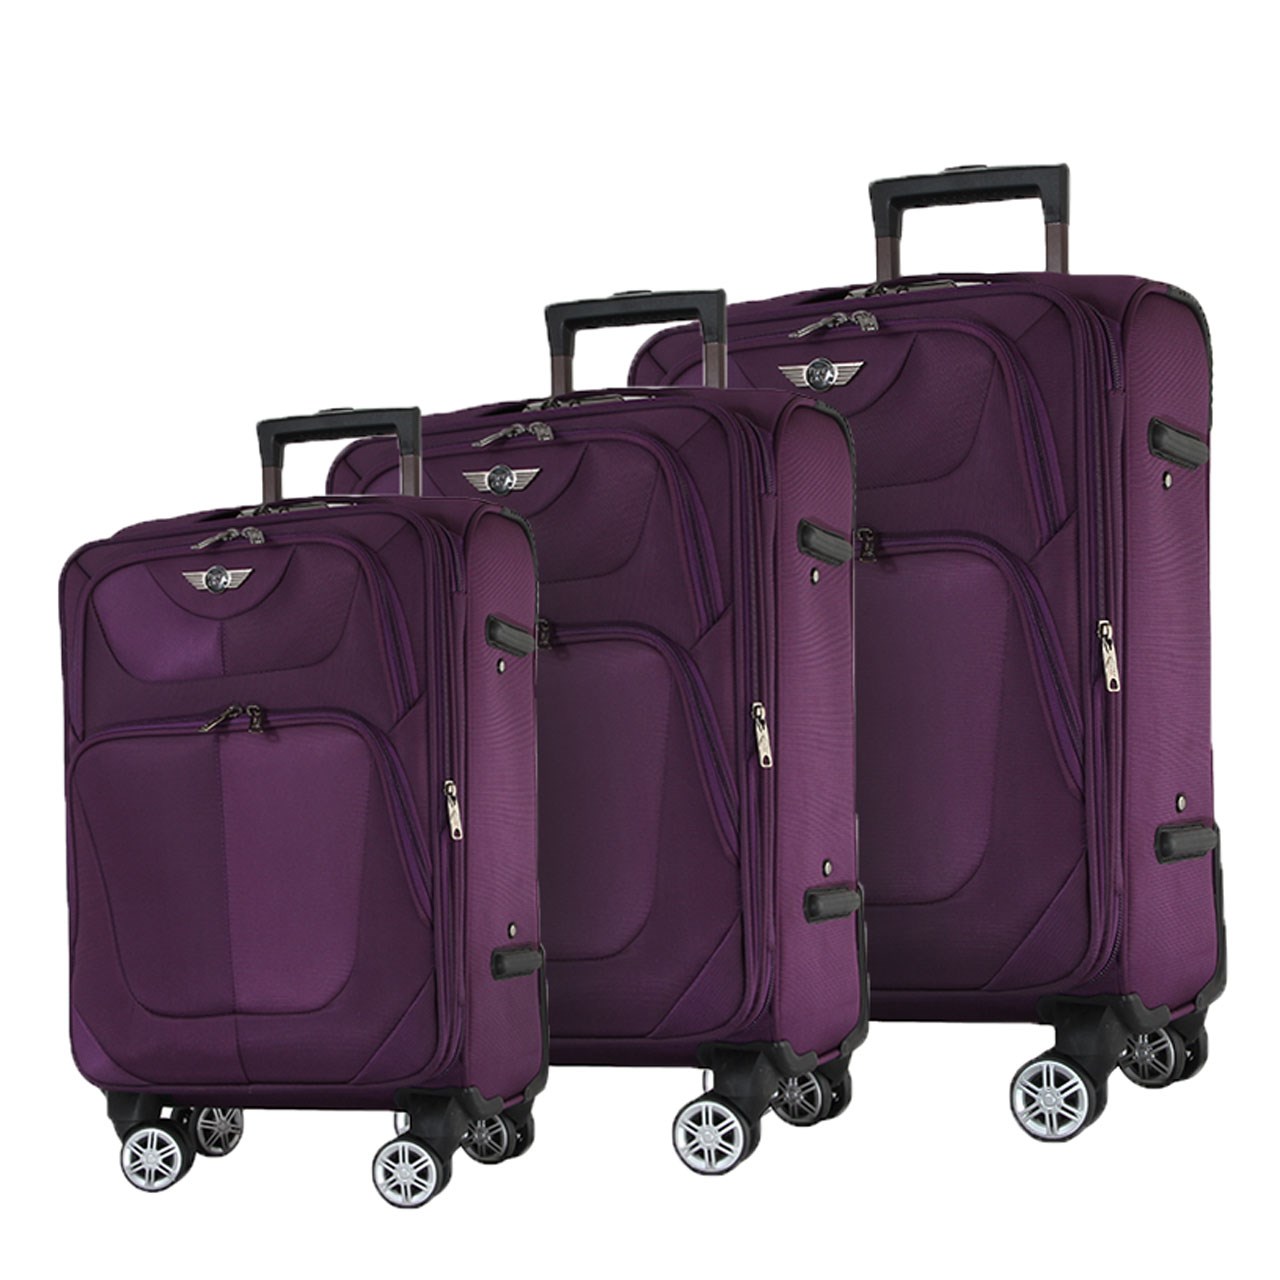 مجموعه سه عددی چمدان تیپس لند مدل 11-4-1753